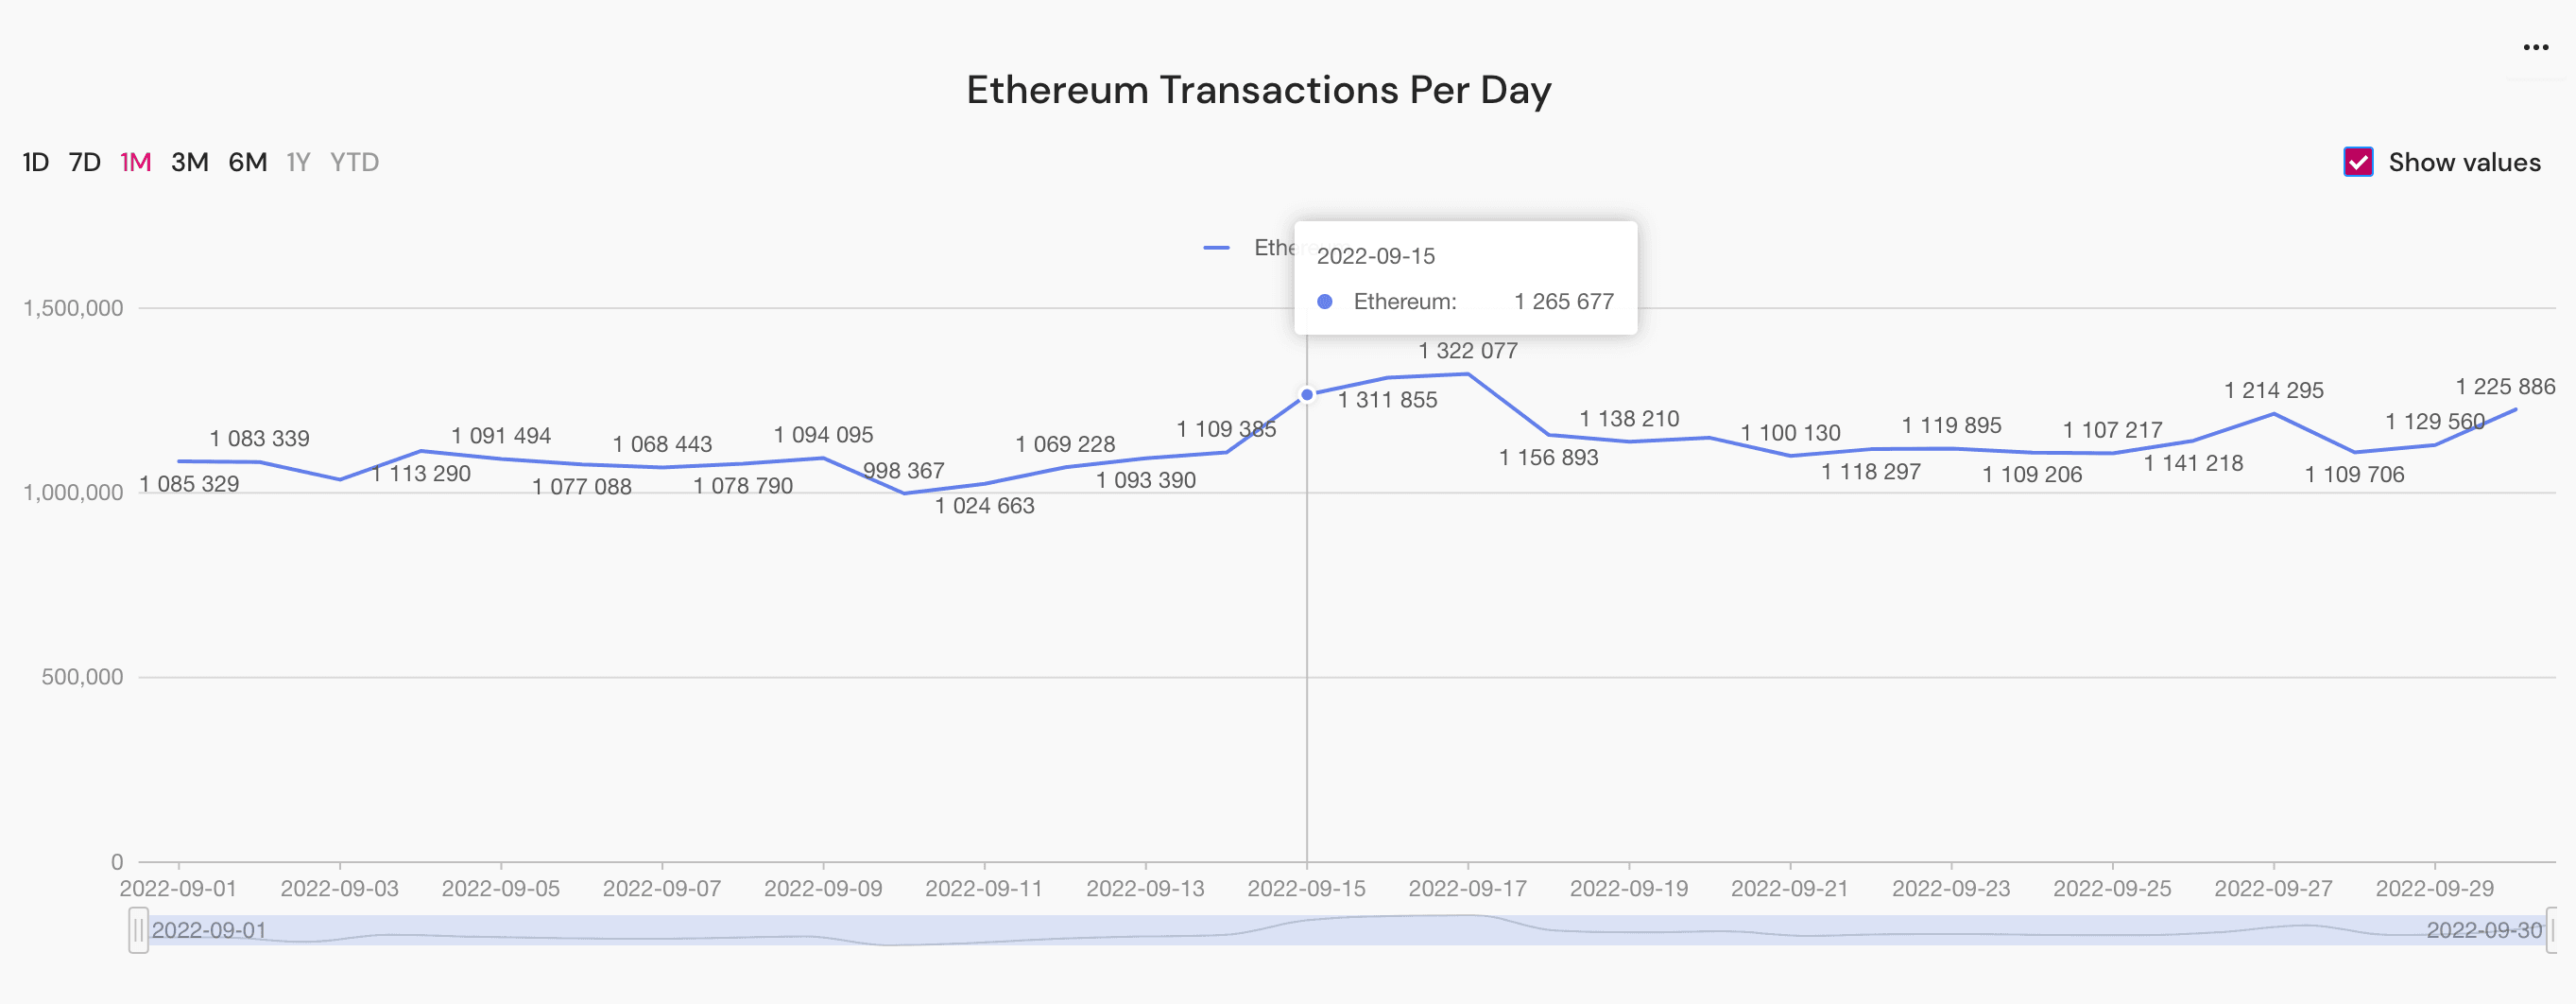 ethereum transactions peak, September 2022